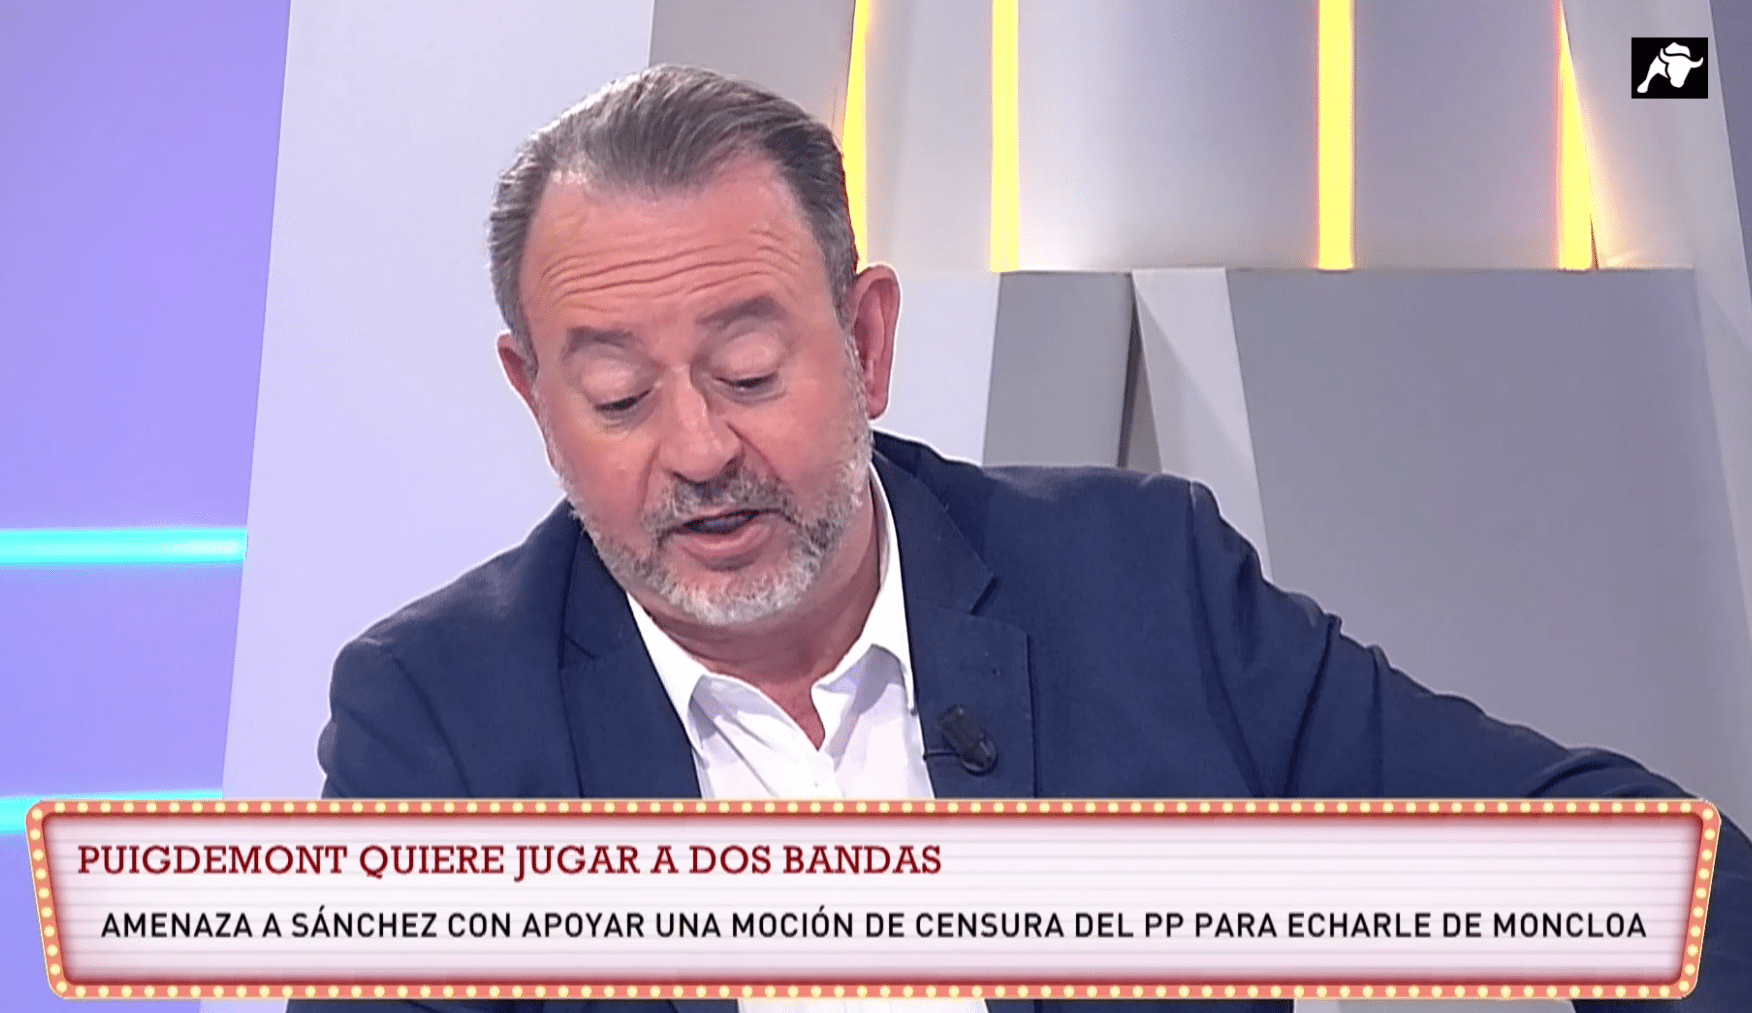 ¿Moción de censura del PP apoyada por Puigdemont? “Un chiste”